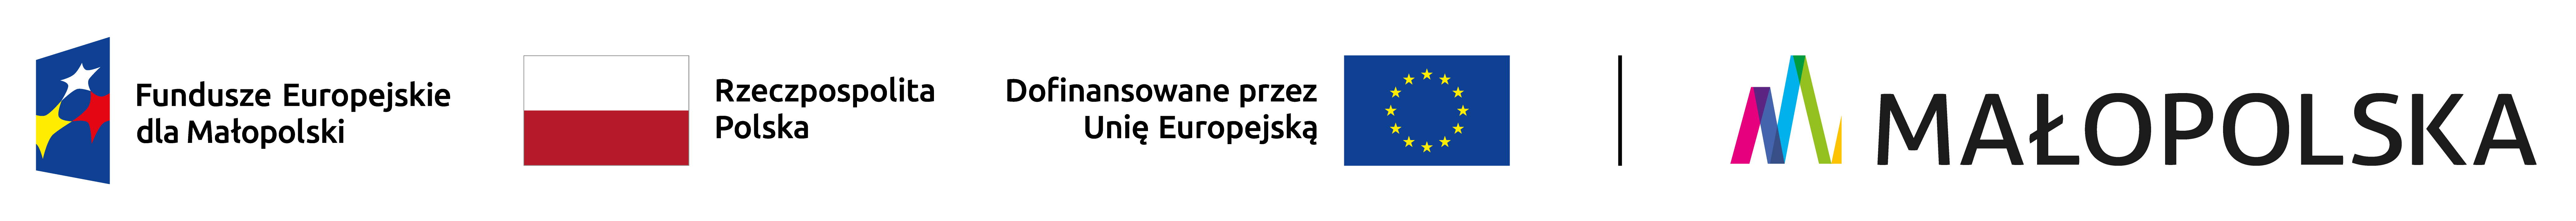 logotypy UE, RP,logo Małopolski